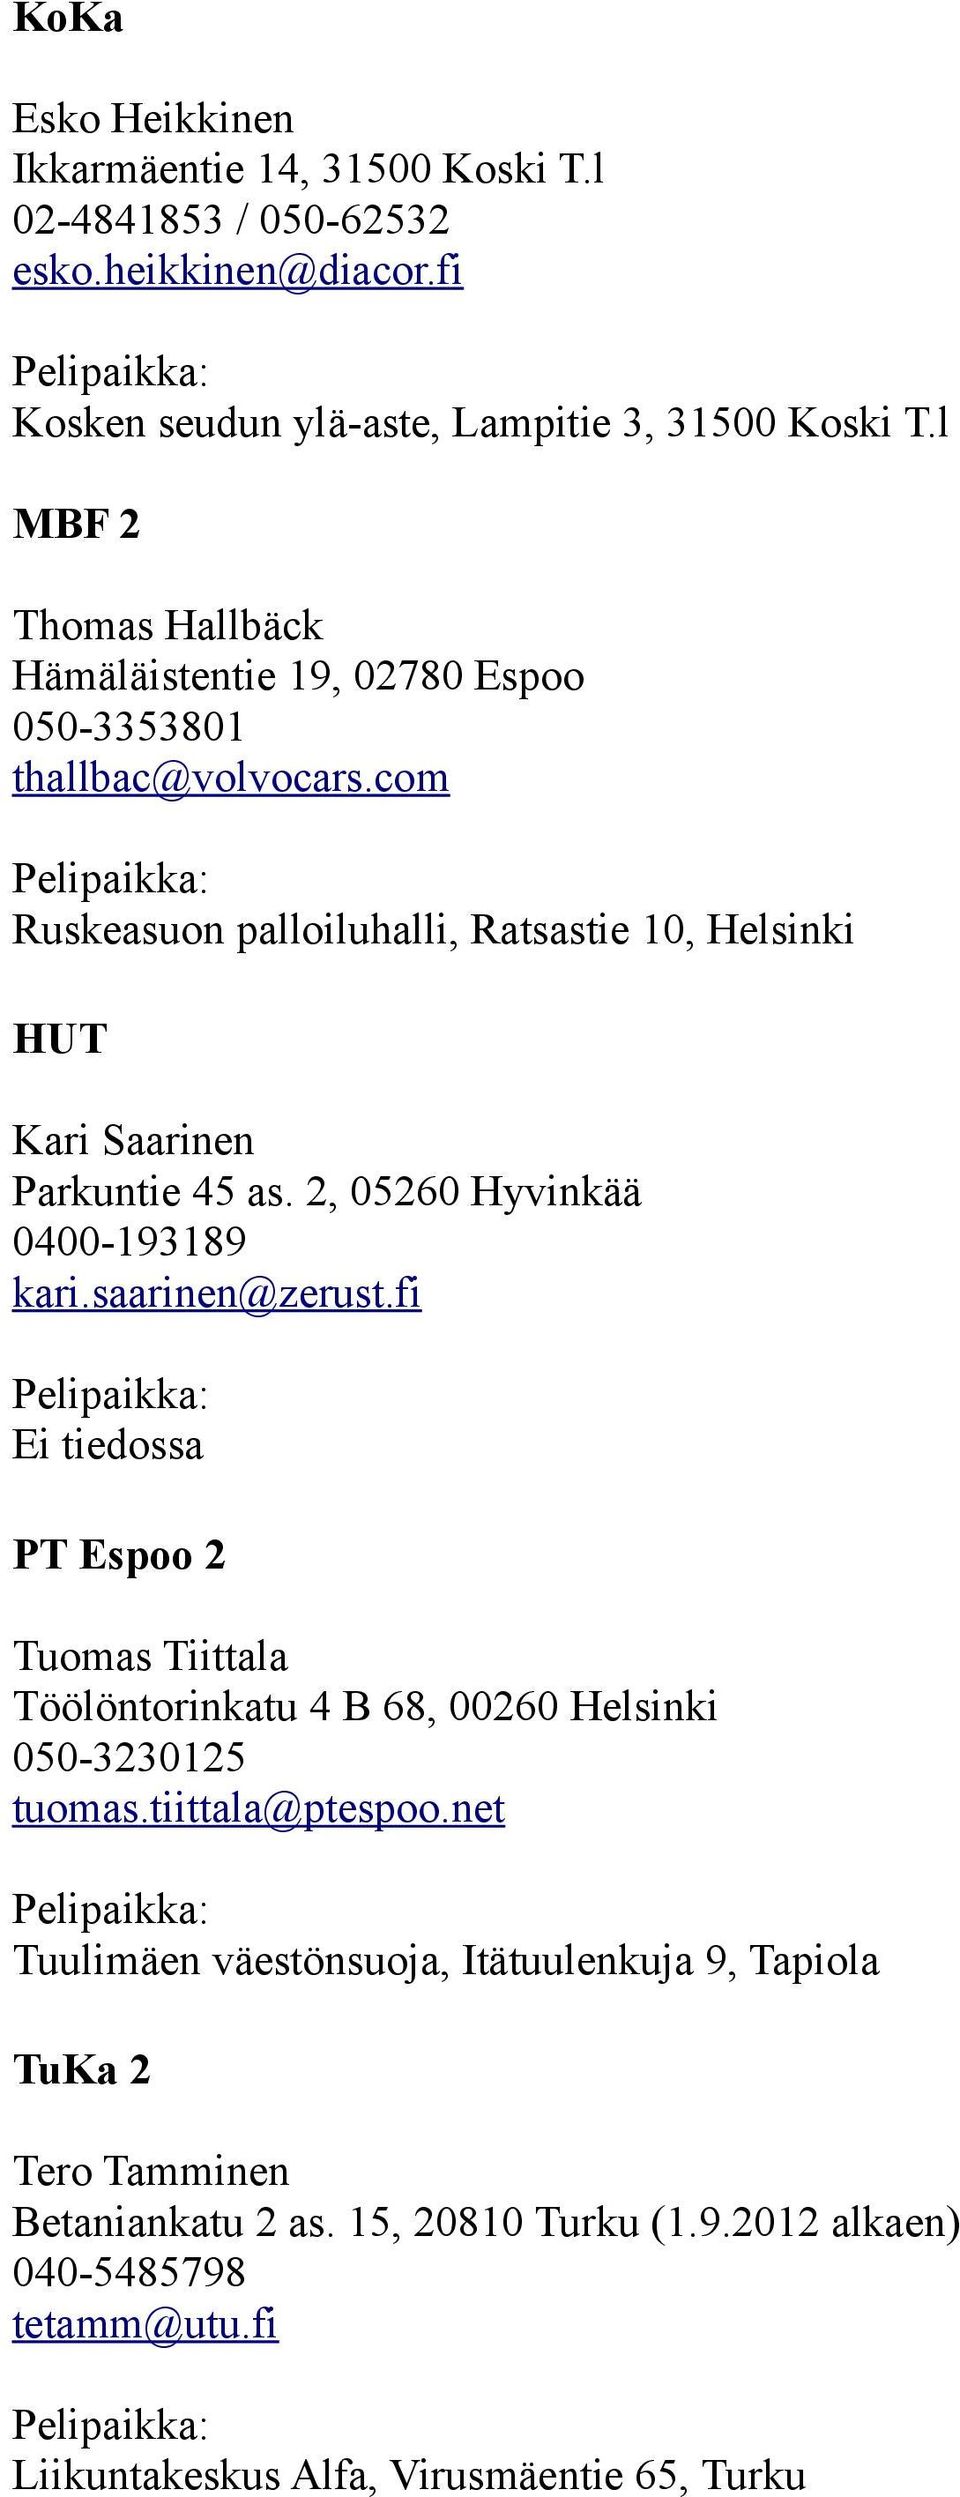 2, 05260 Hyvinkää 0400-193189 kari.saarinen@zerust.fi PT Espoo 2 Tuomas Tiittala Töölöntorinkatu 4 B 68, 00260 Helsinki 050-3230125 tuomas.tiittala@ptespoo.